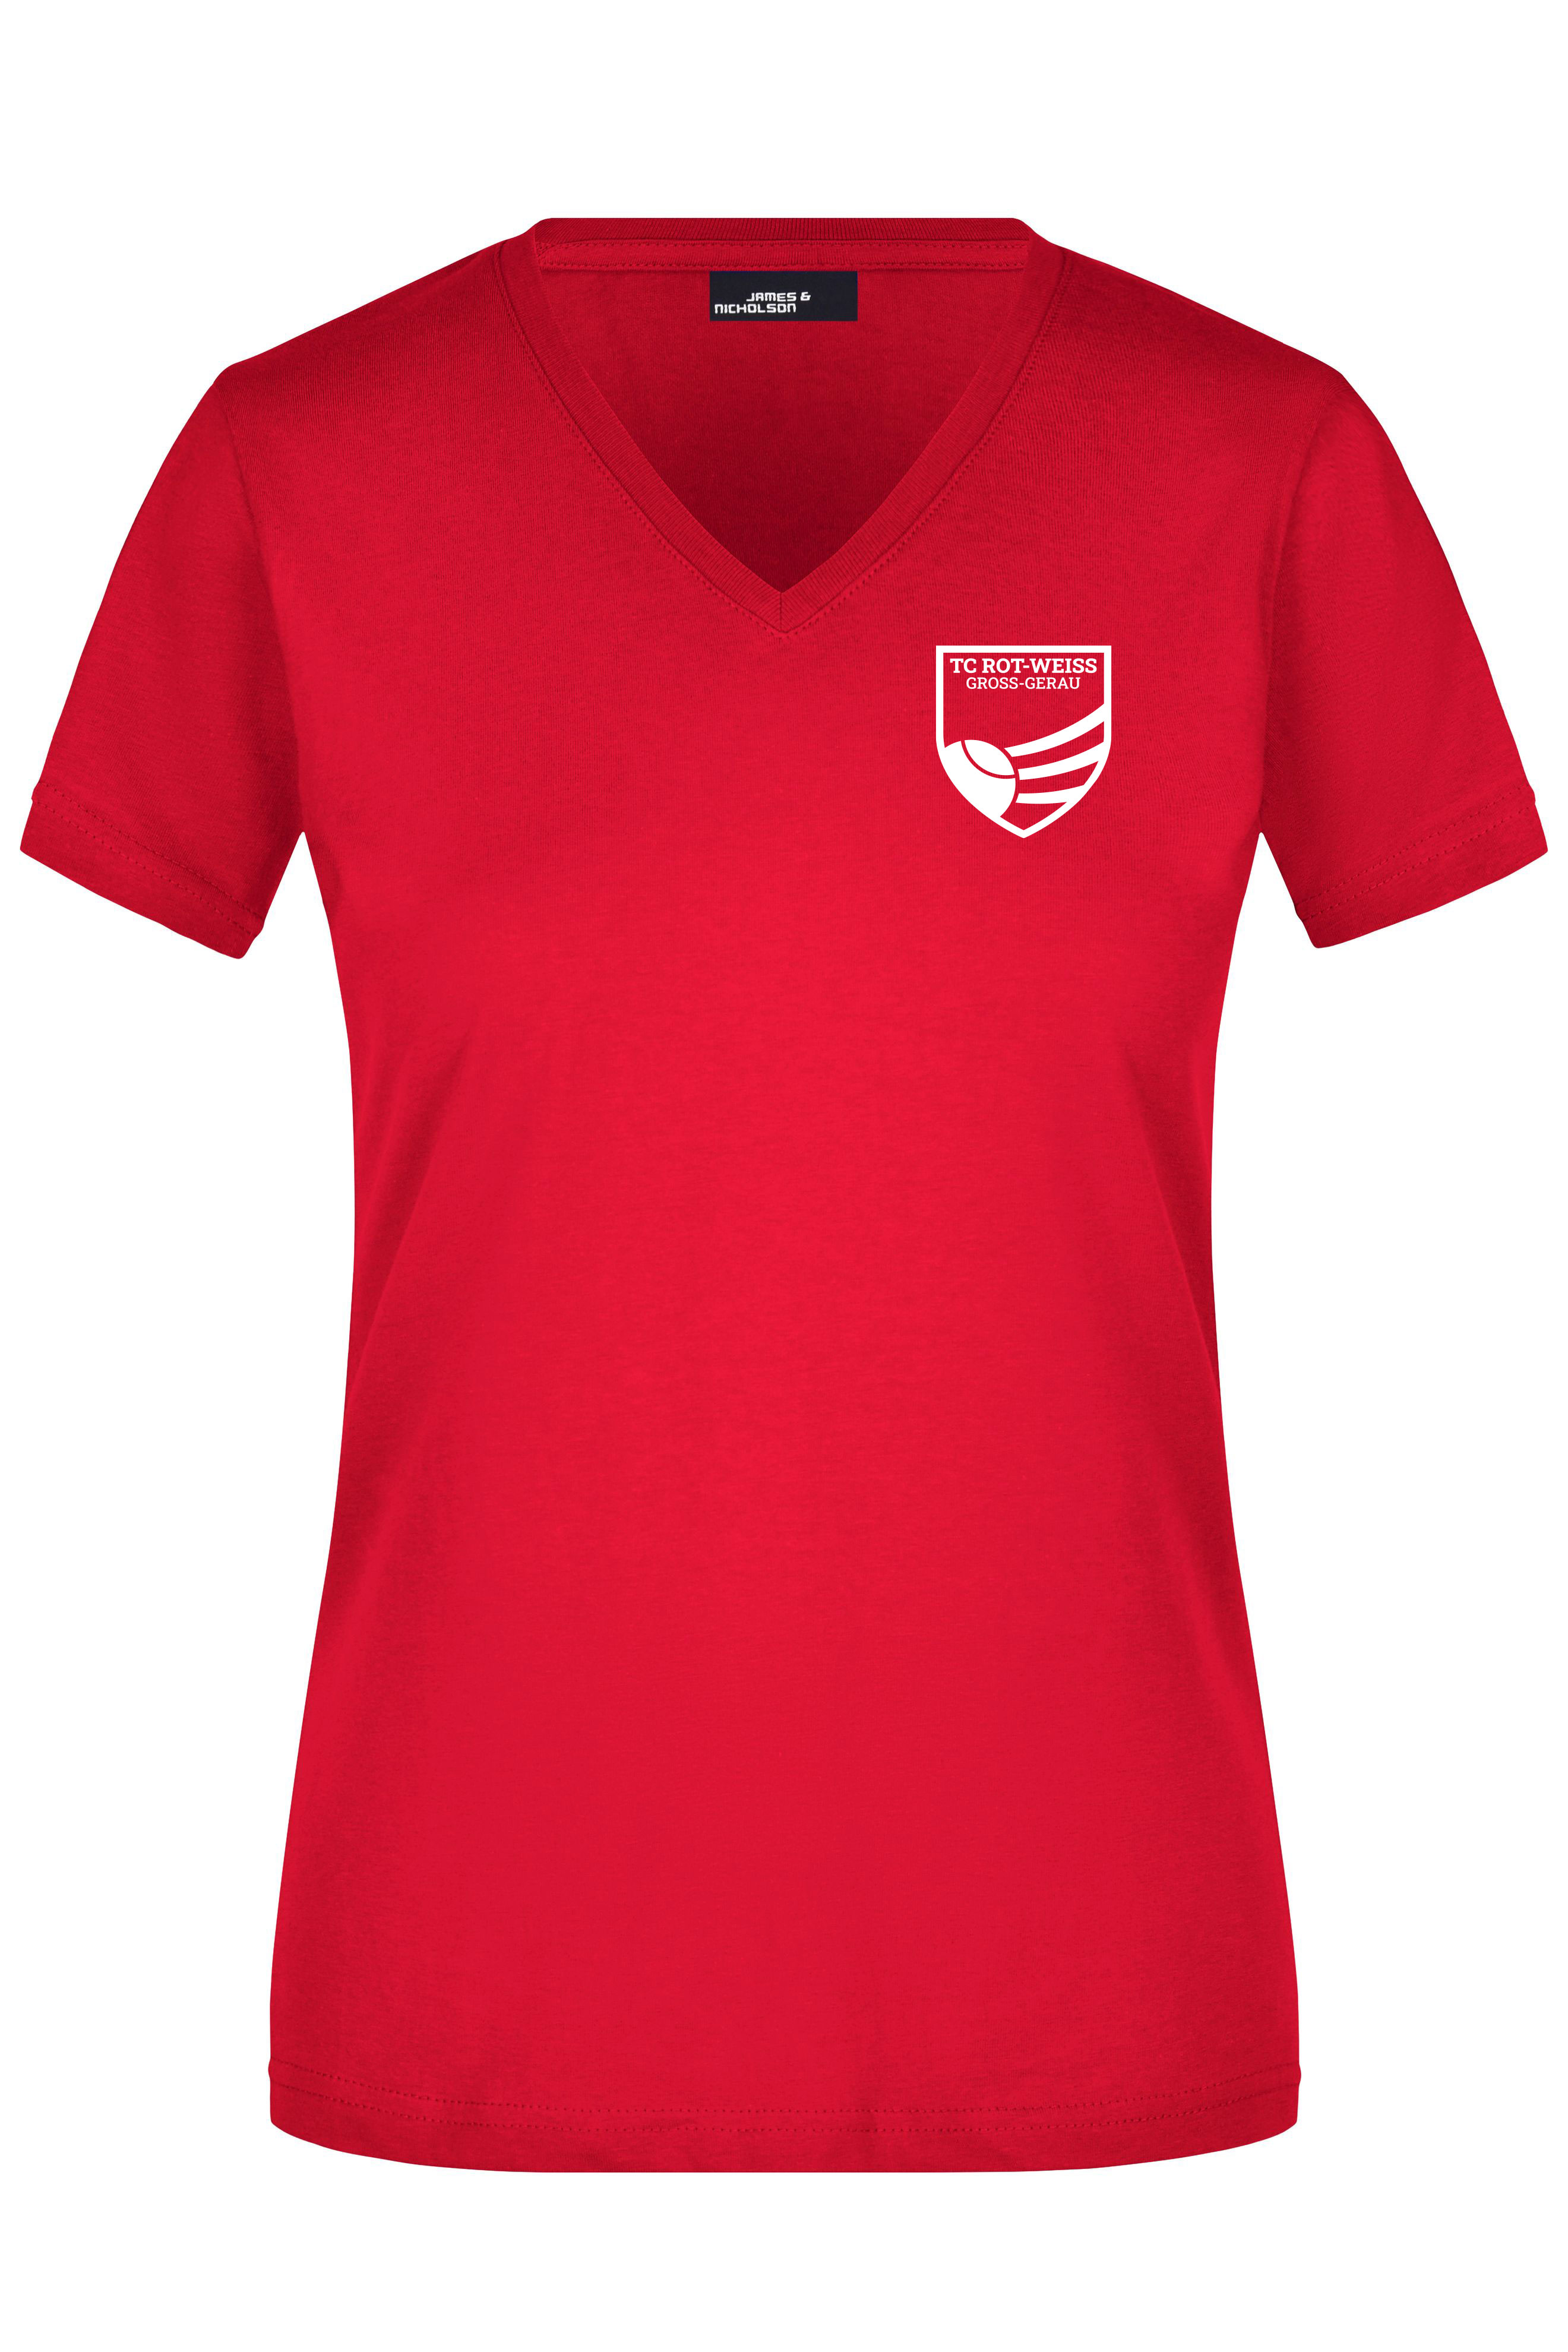 TC Rot-Weiss - Vorteil GG - Girly T-Shirt weiss auf rot